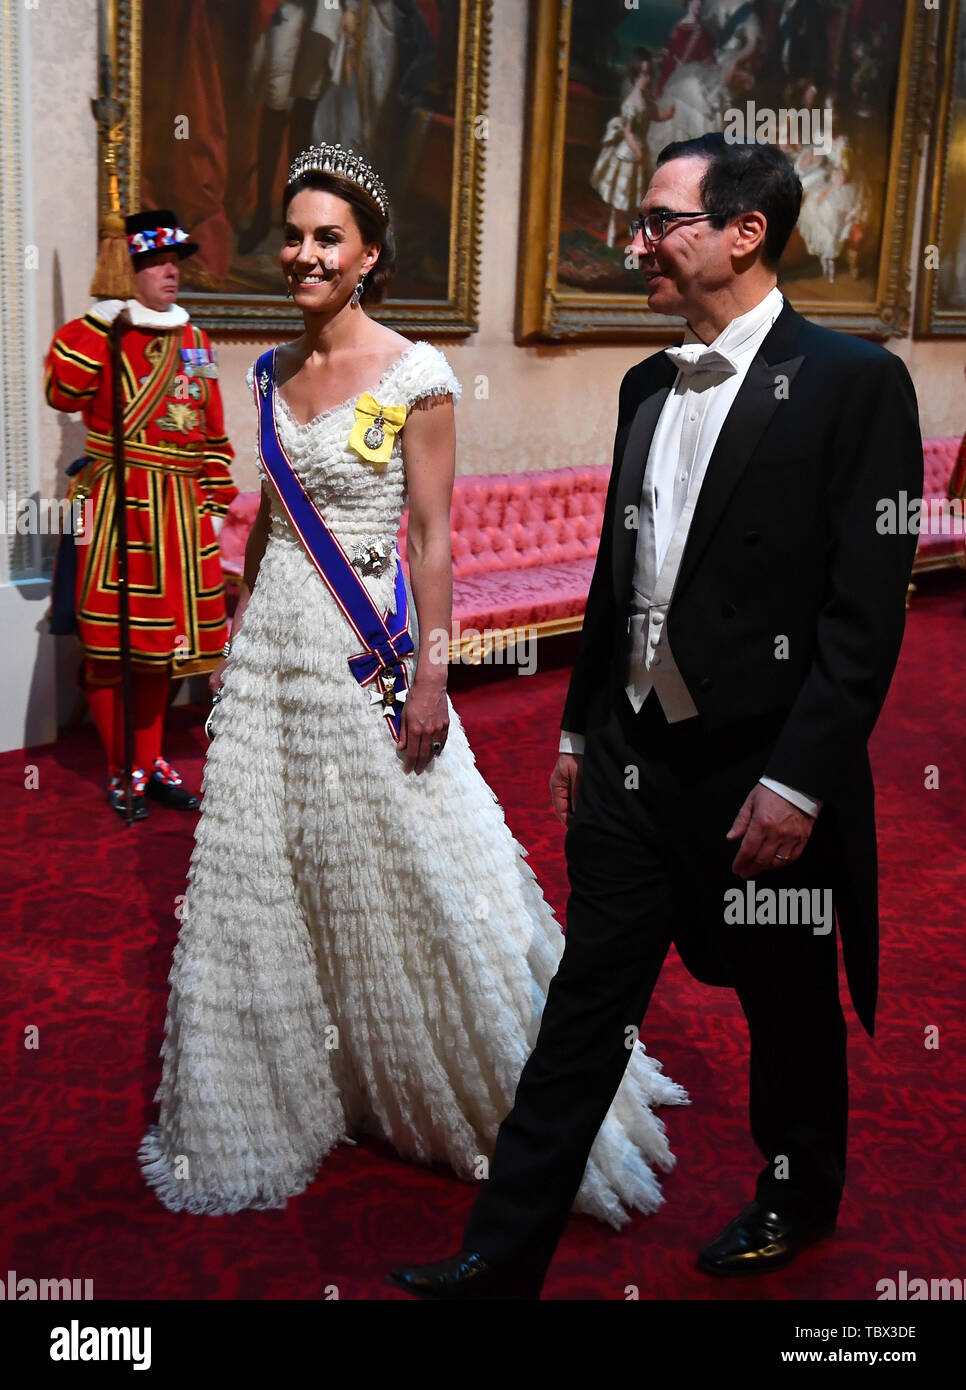 La duchesse de Cambridge et secrétaire au Trésor des États-Unis, Steven Mnuchin arrivent par la galerie est au cours de la banquet d'État au palais de Buckingham, à Londres, le premier jour de l'US President's trois jour visite d'état du Royaume-Uni. Banque D'Images